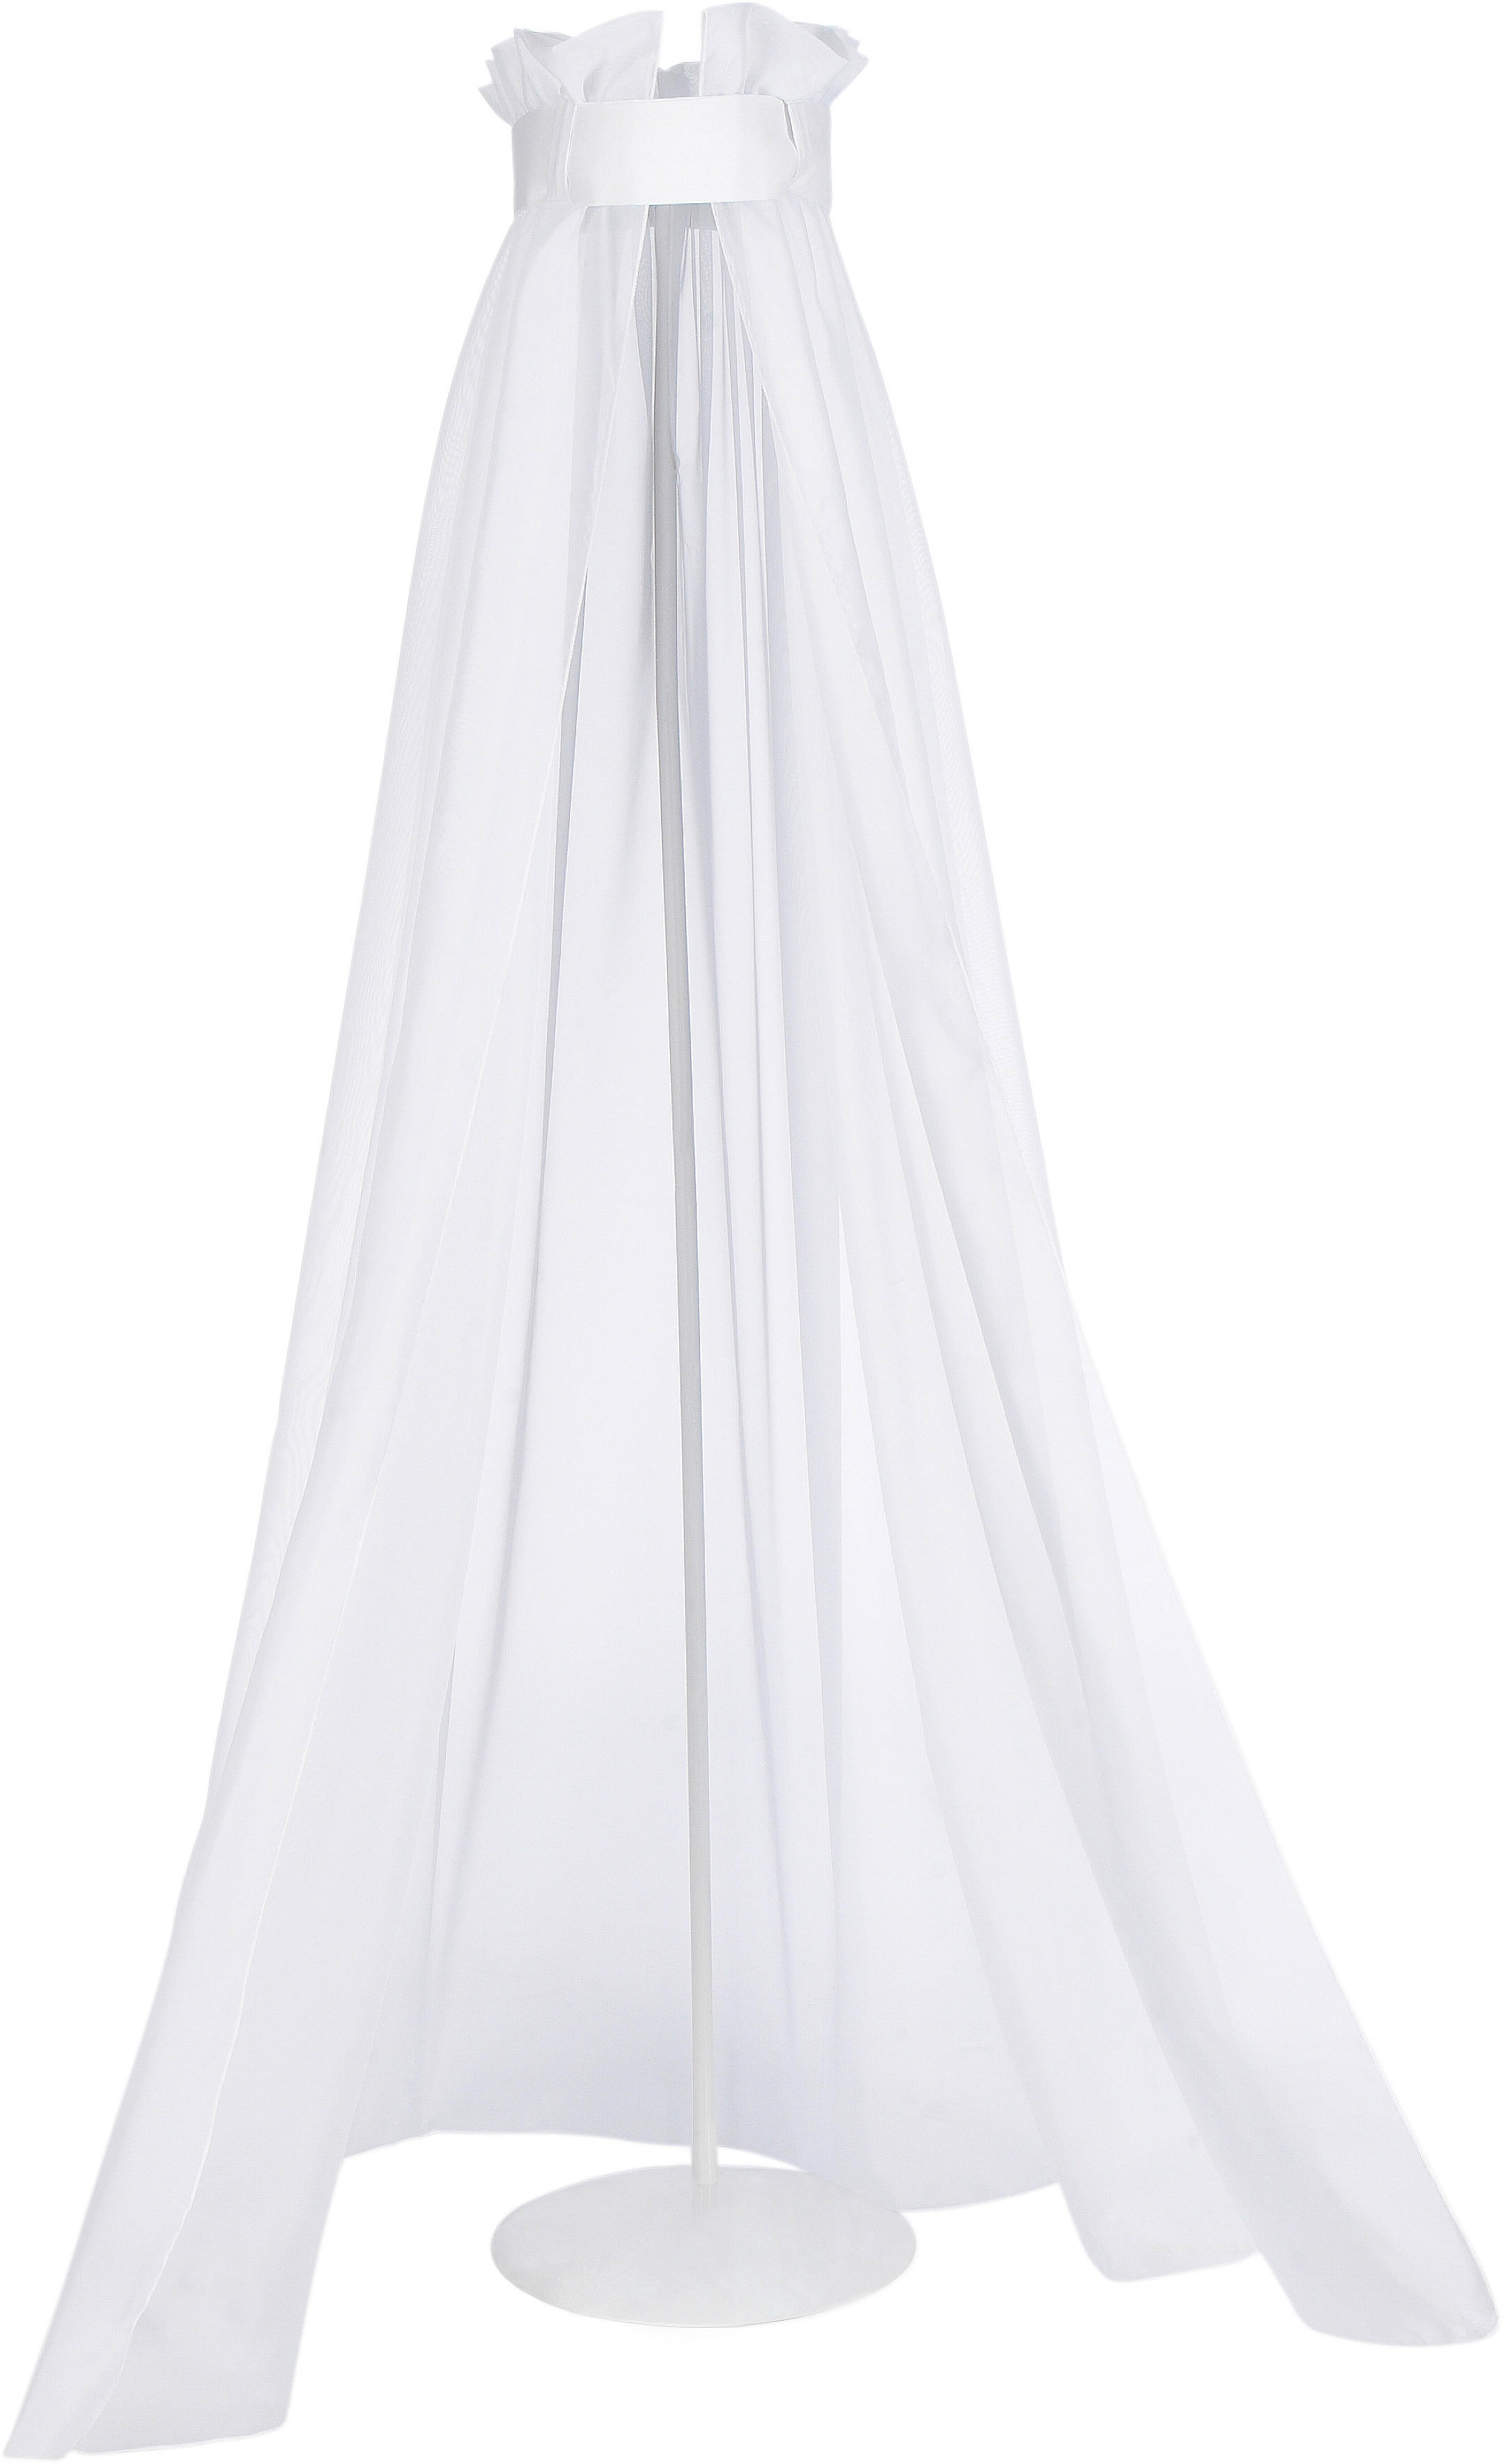 BALDAHIN   - bijela, Basics, tekstil (160/260cm) - My Baby Lou